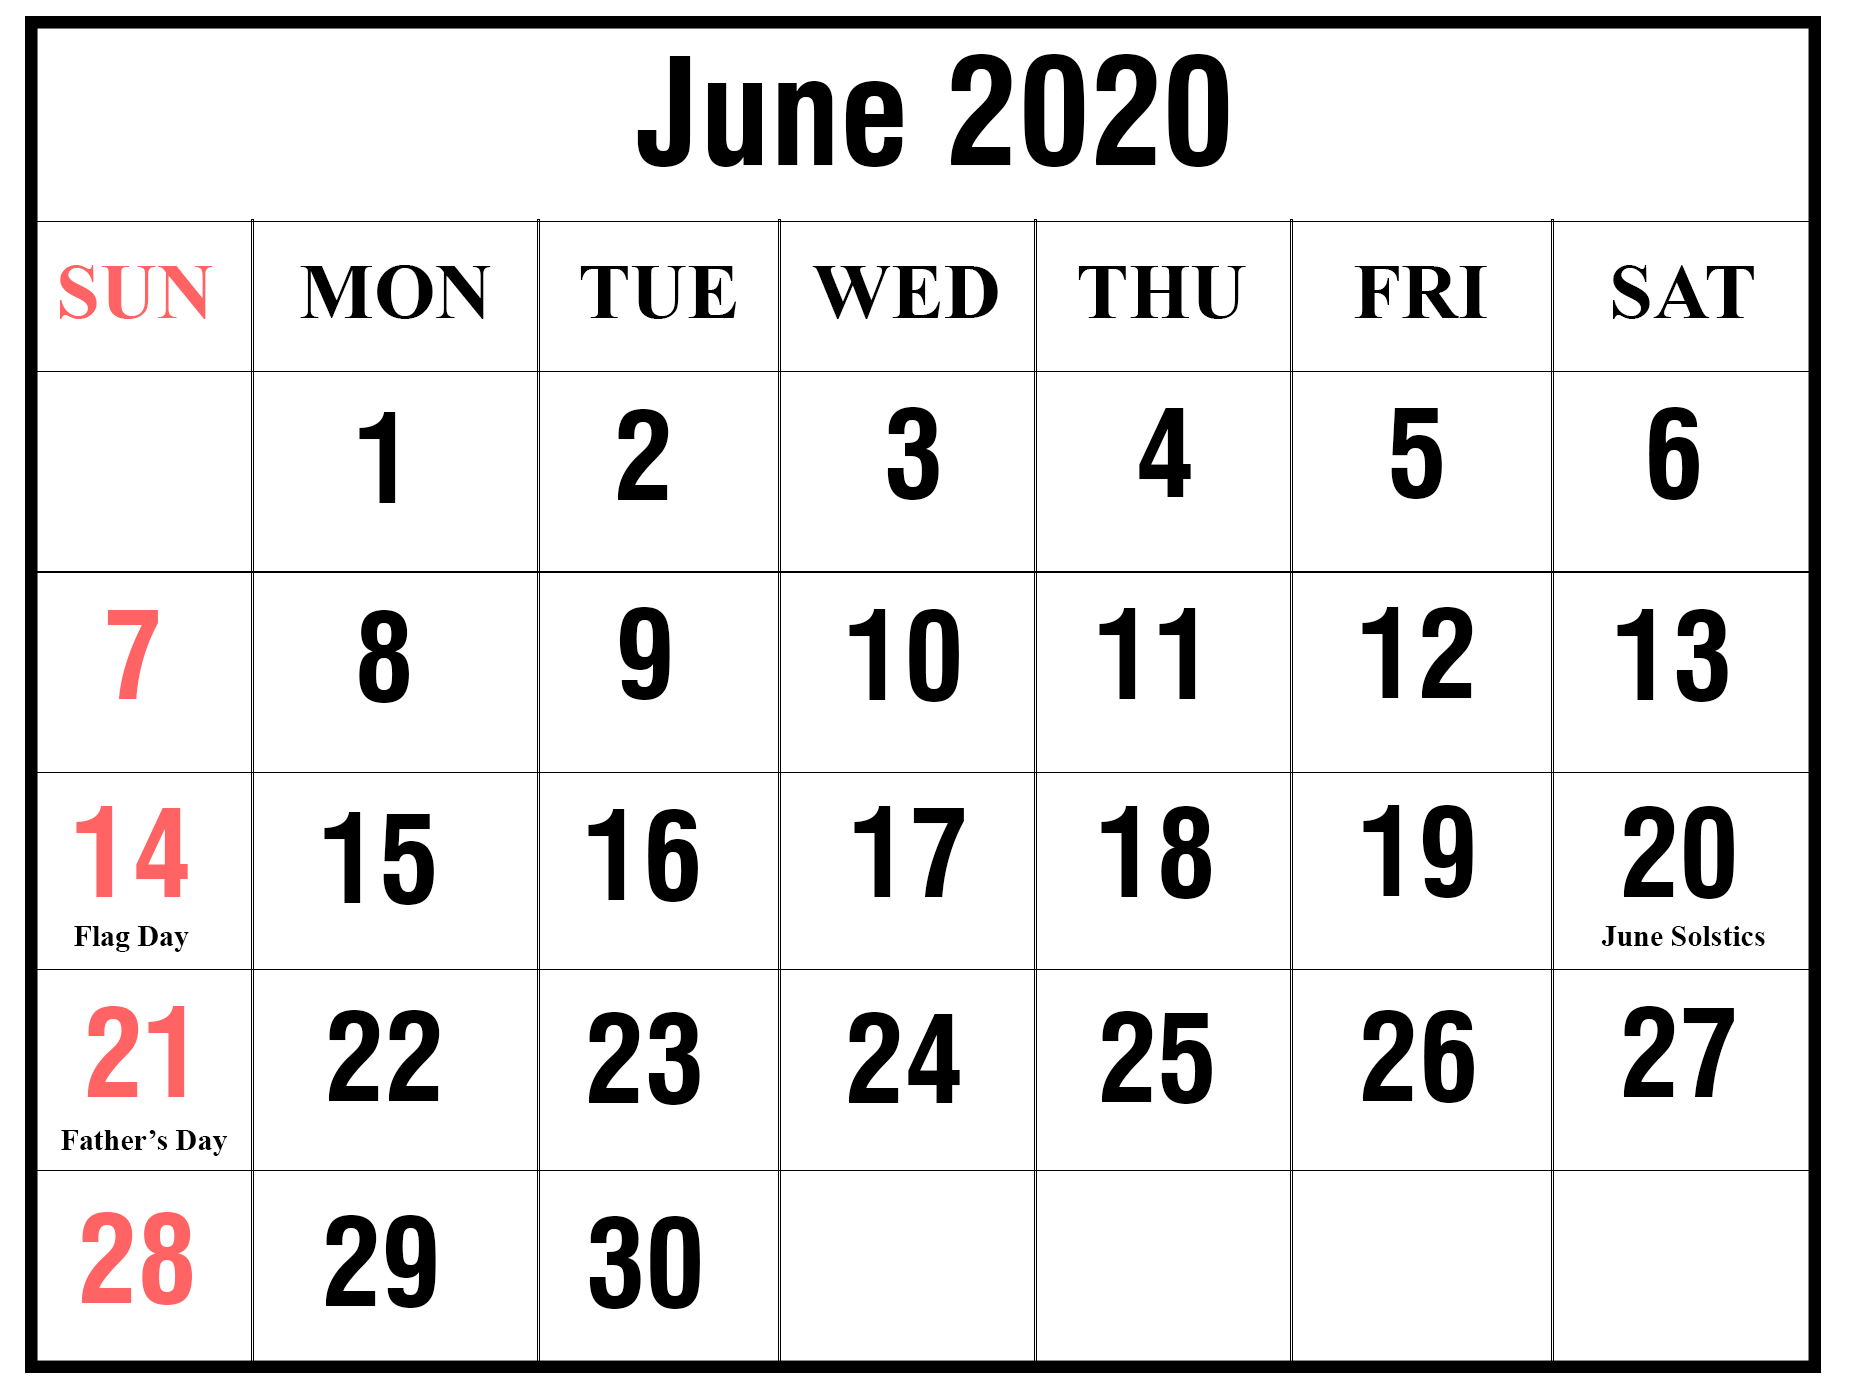 June 2020 news calendar